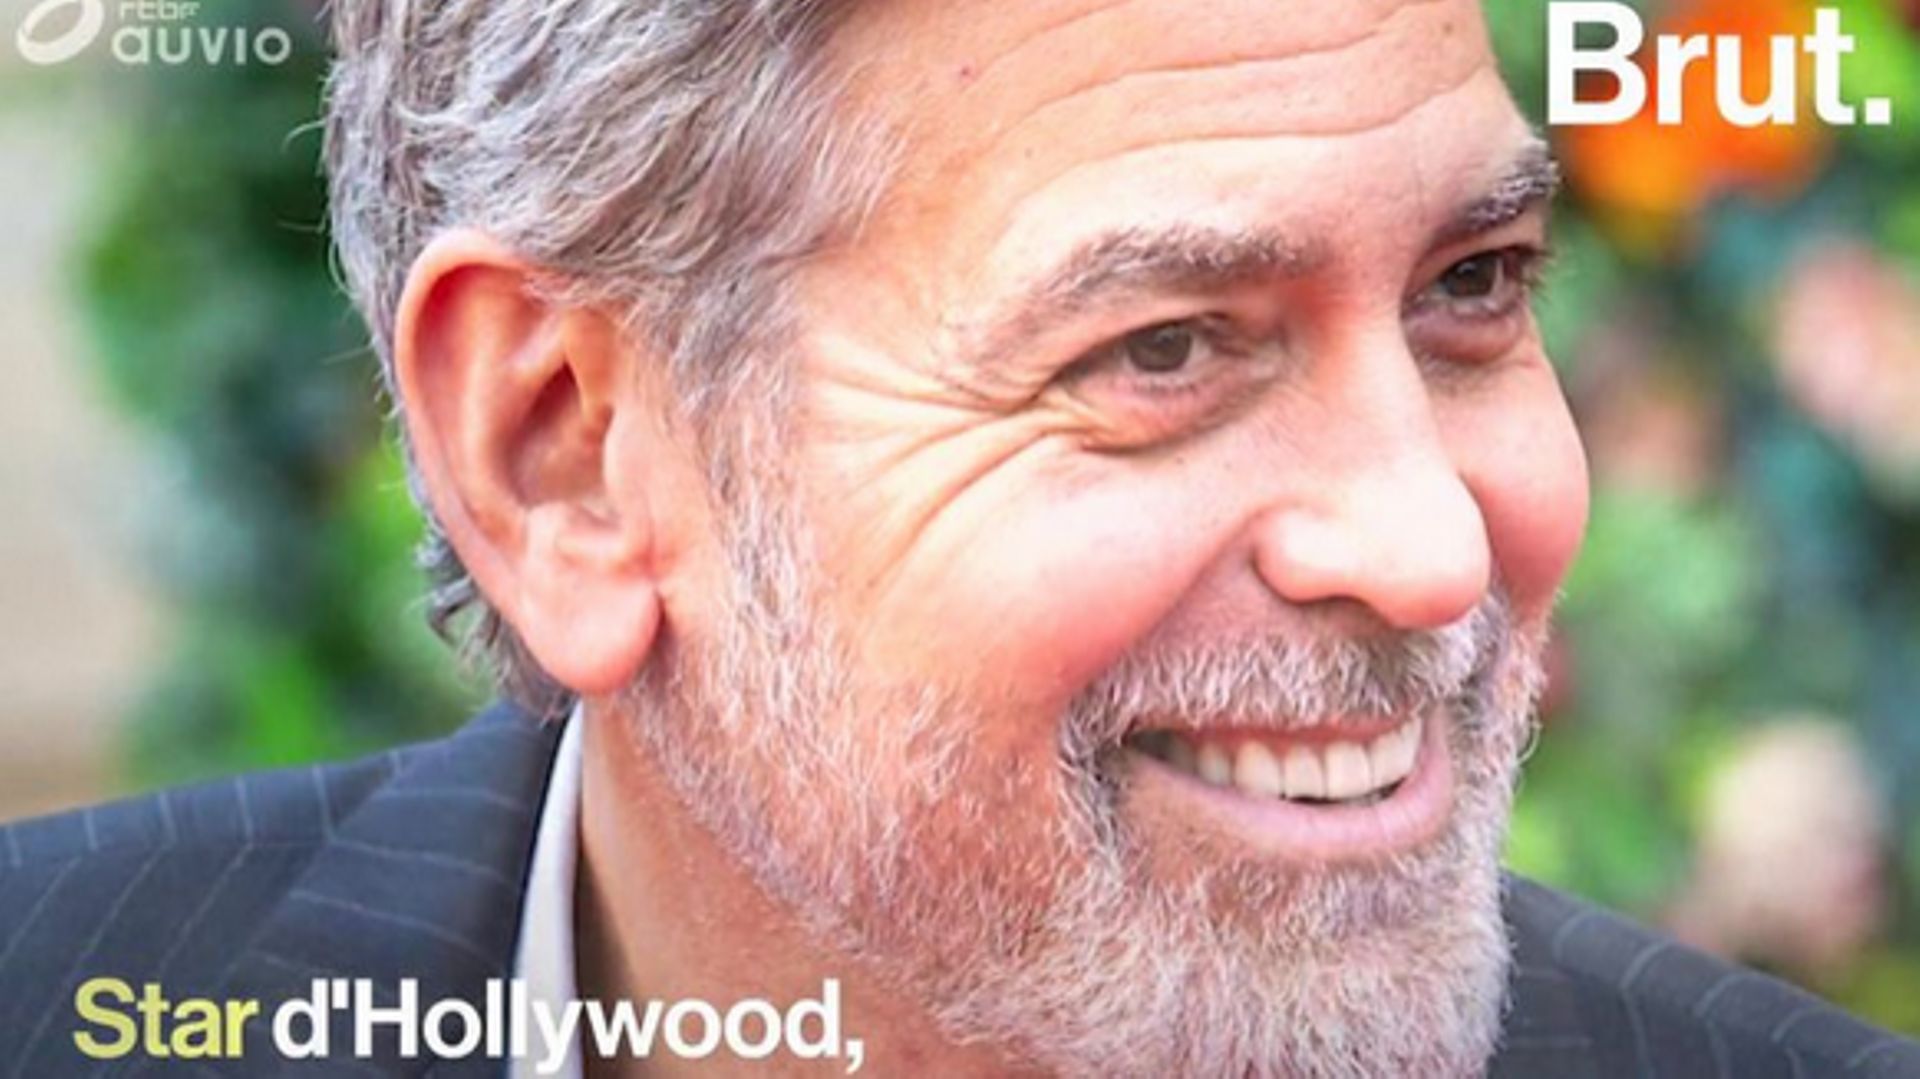 Pacifiste, star de cinéma, défenseur des opprimés… La vie hors norme de George Clooney